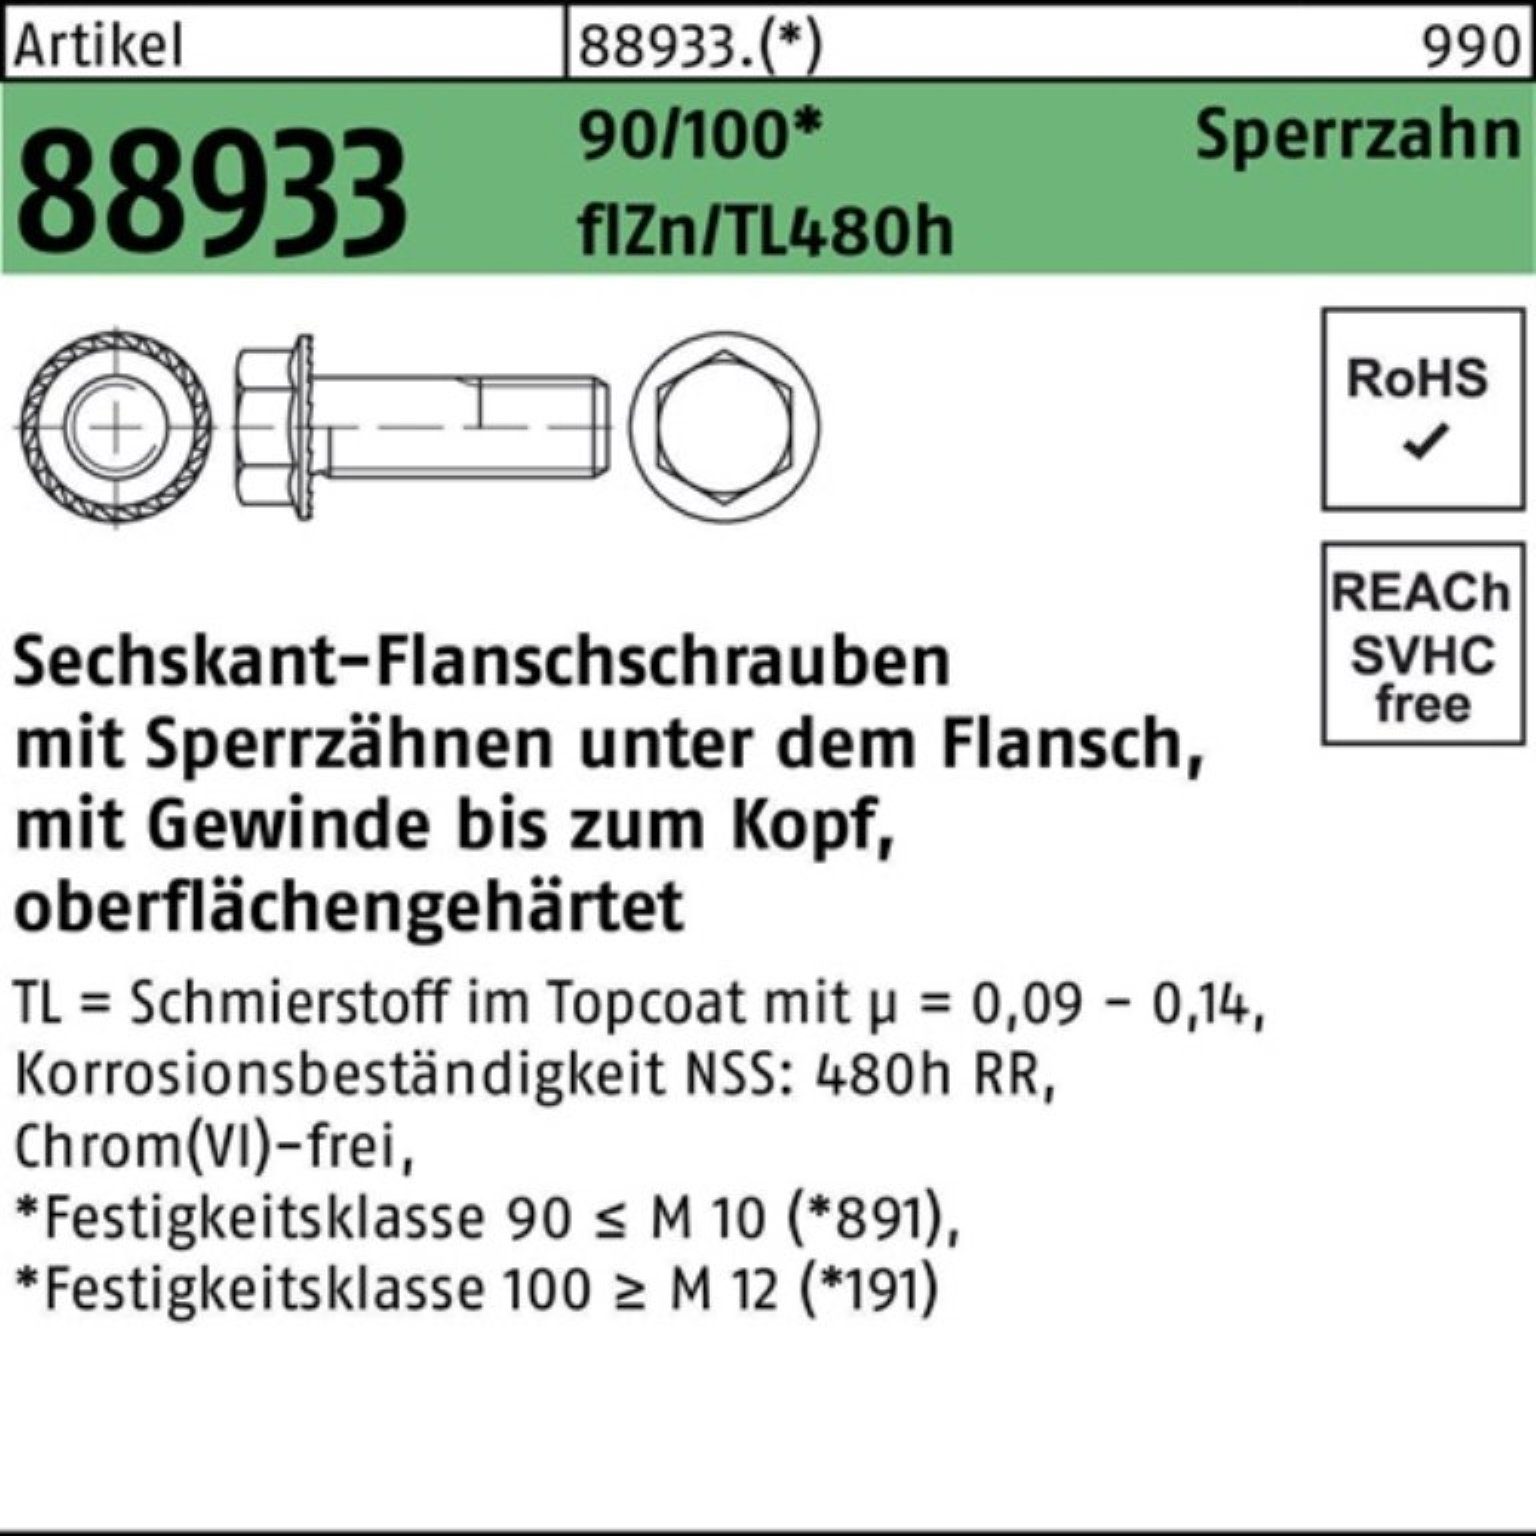 Reyher Schraube 100er Pack VG 90/100 R 88933 Sechskantflanschschraube M12x45 Sperrz. f